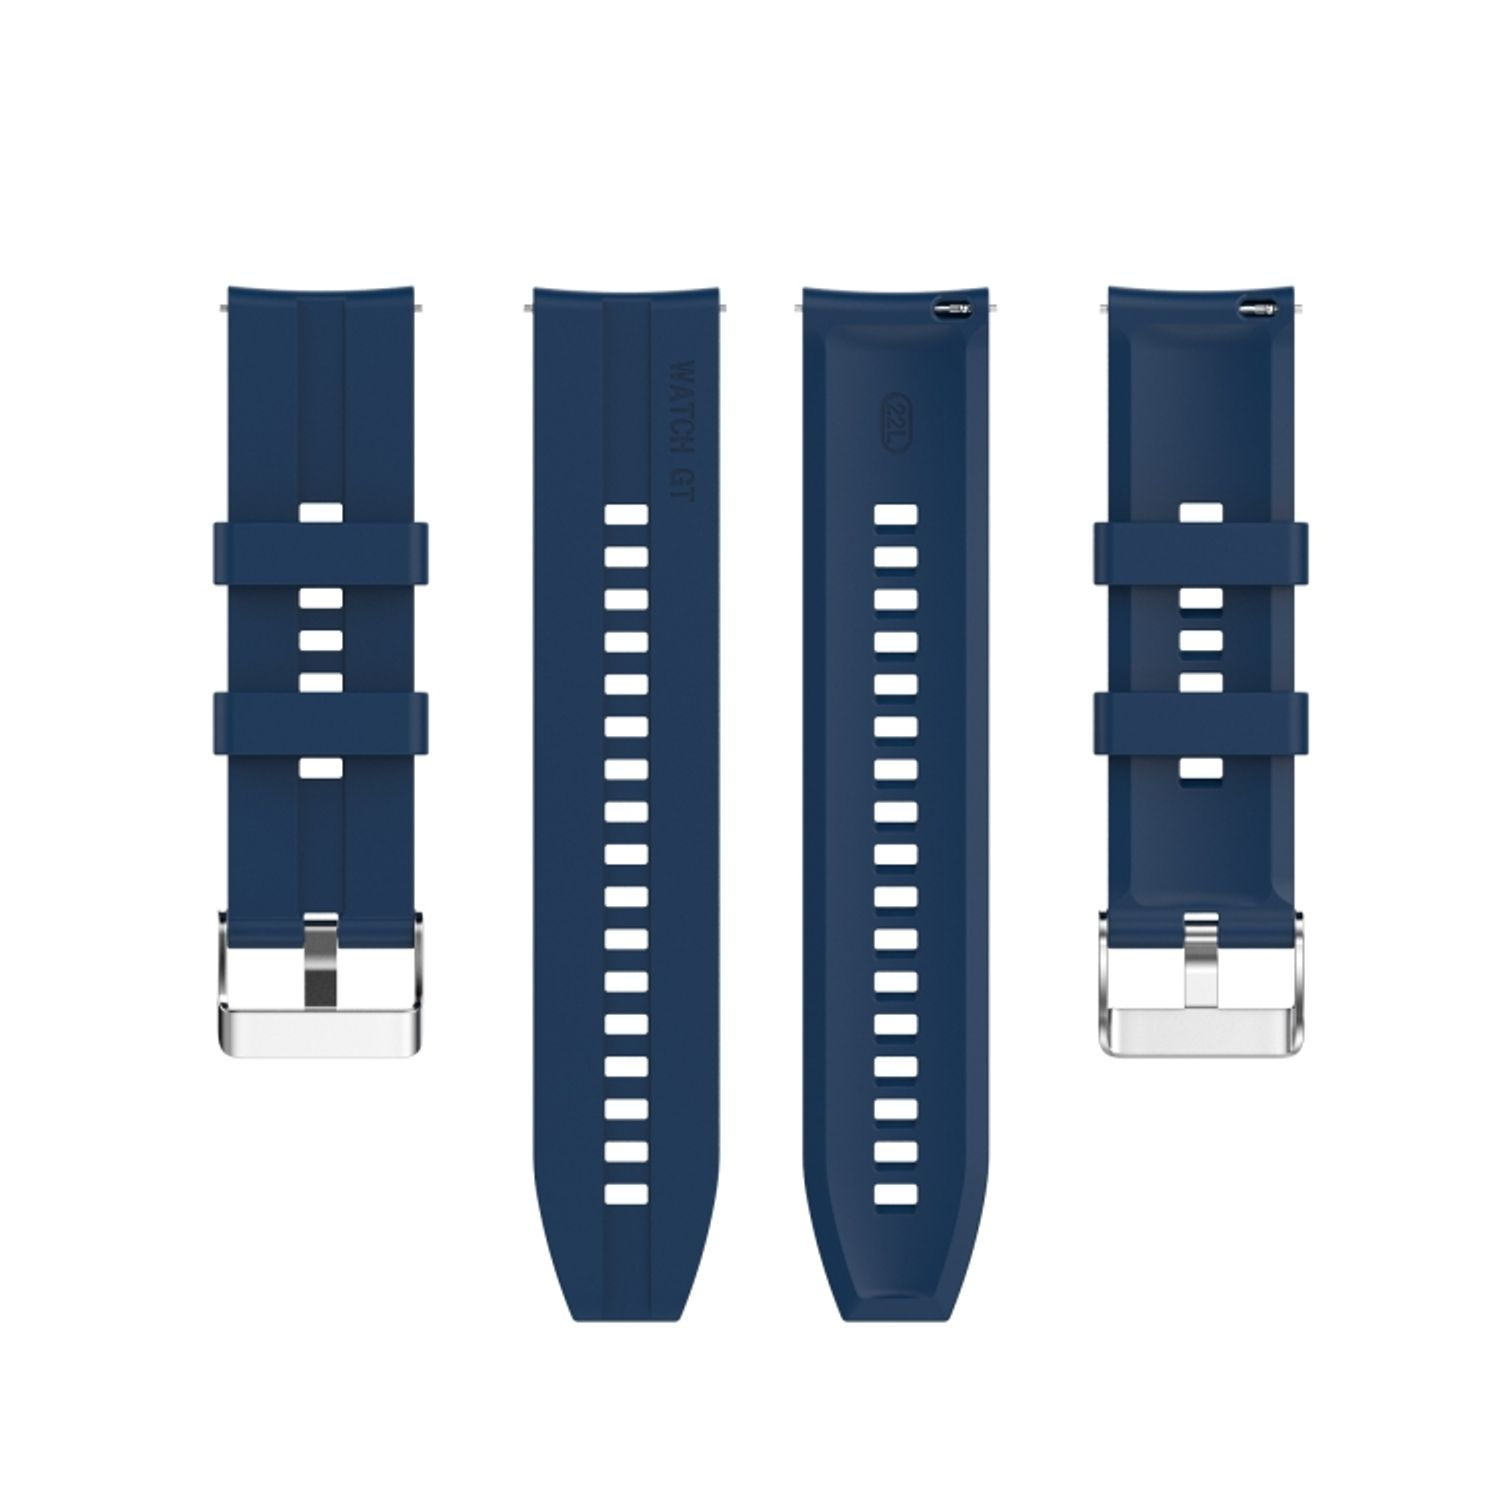 3 Huawei, Ersatzband, KÖNIG Watch Blau 42mm, DESIGN Sportarmband, GT